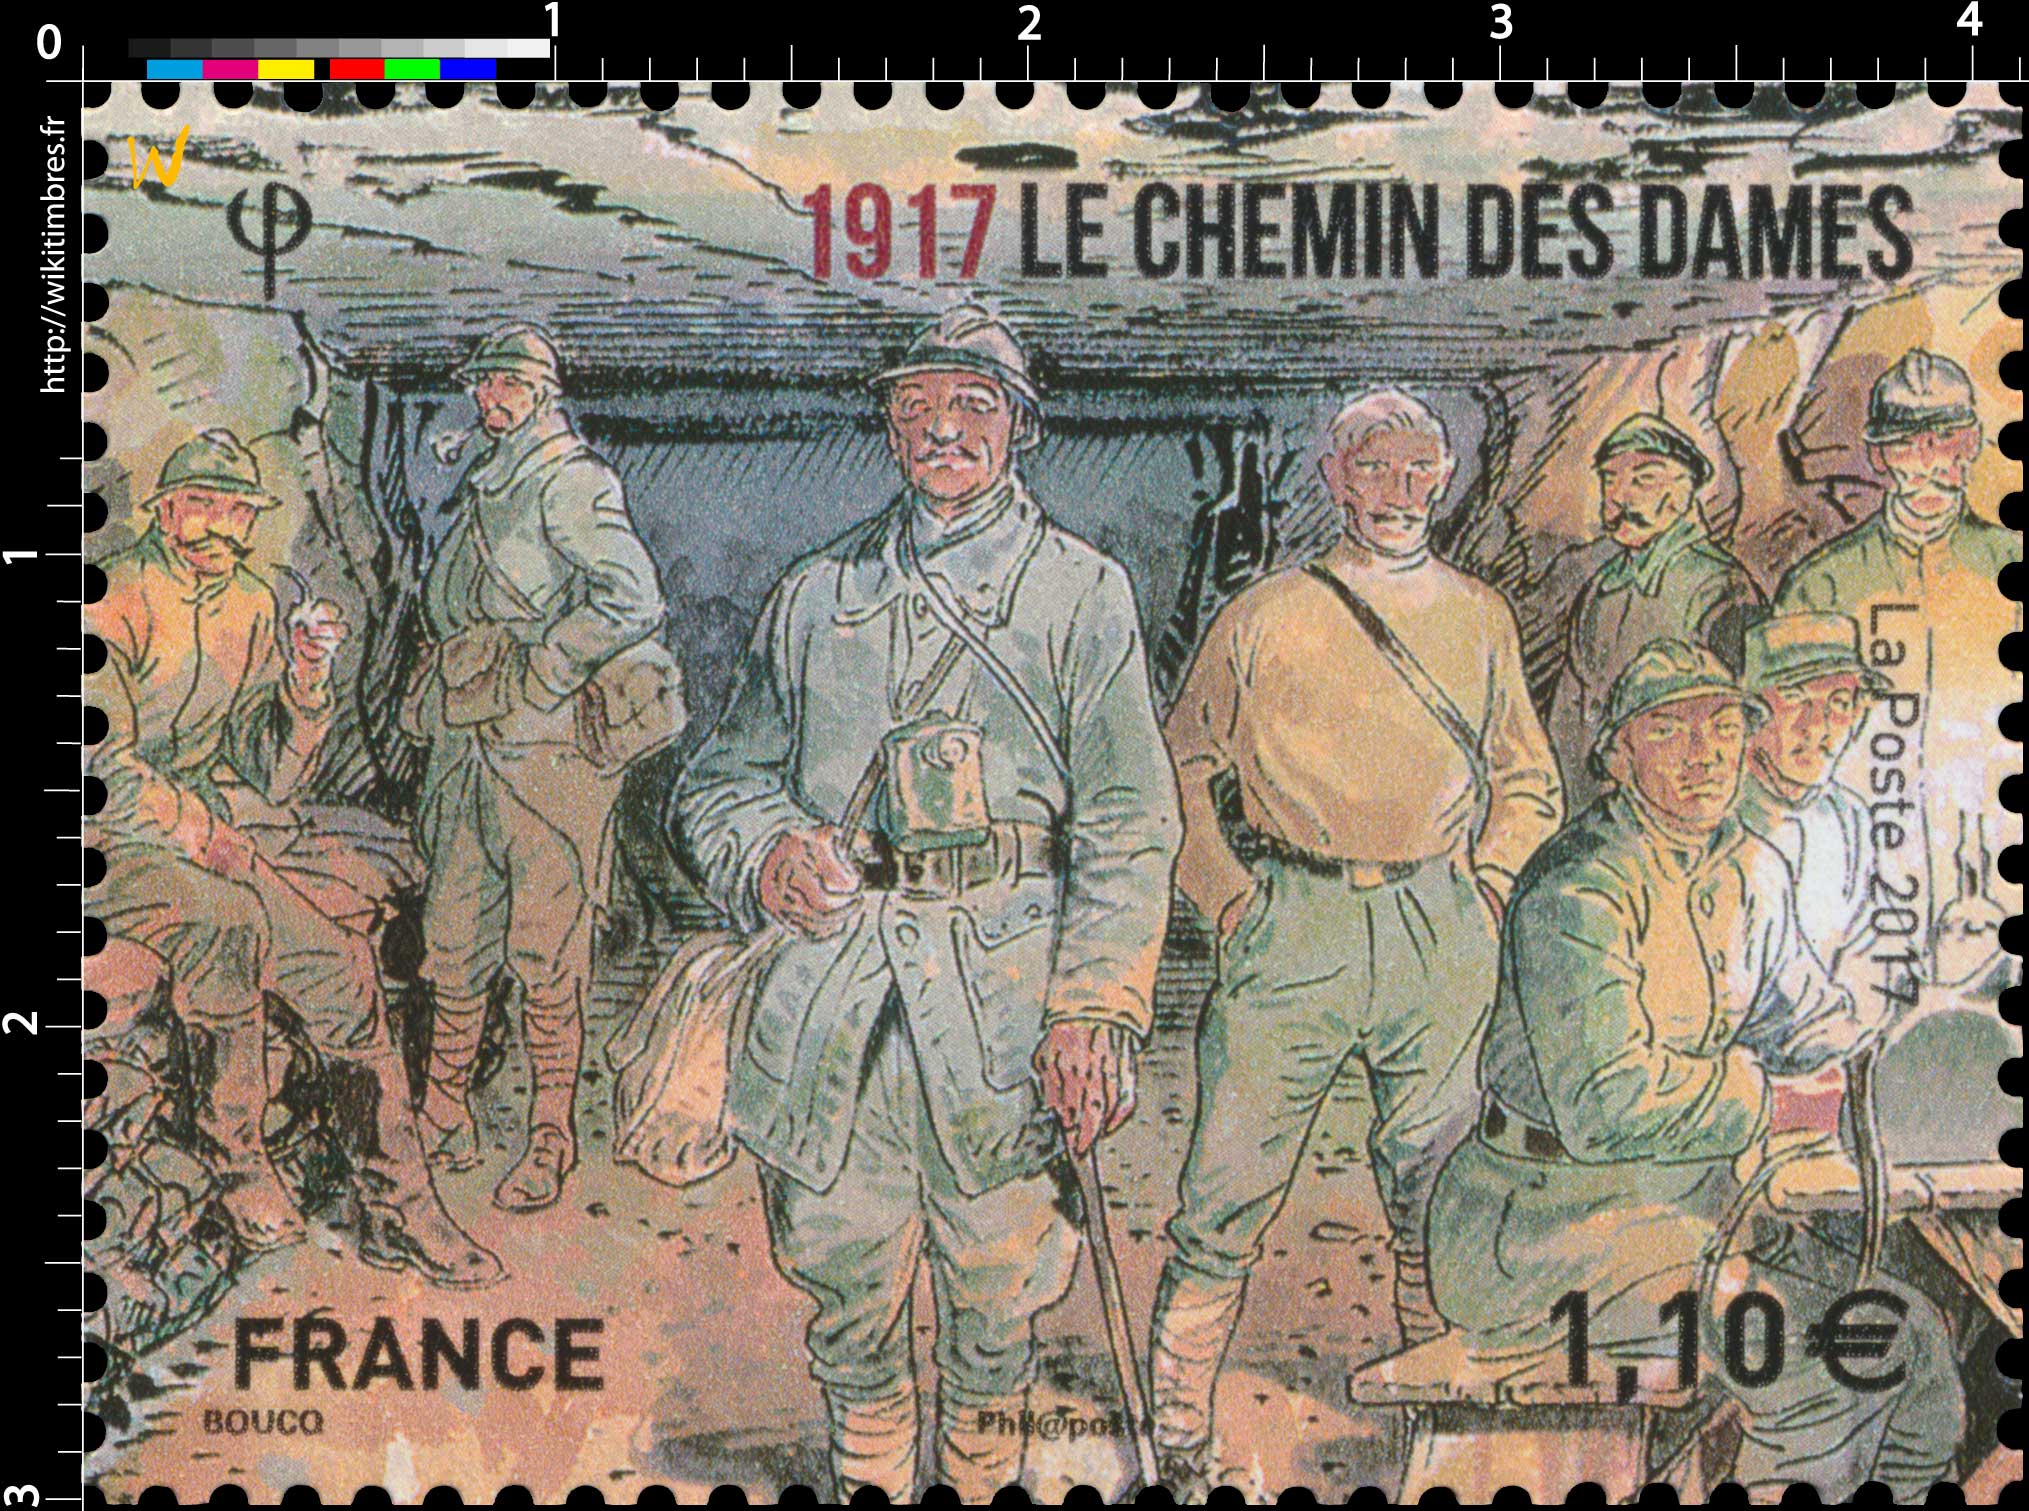 2017 LE CHEMIN DES DAMES 1917